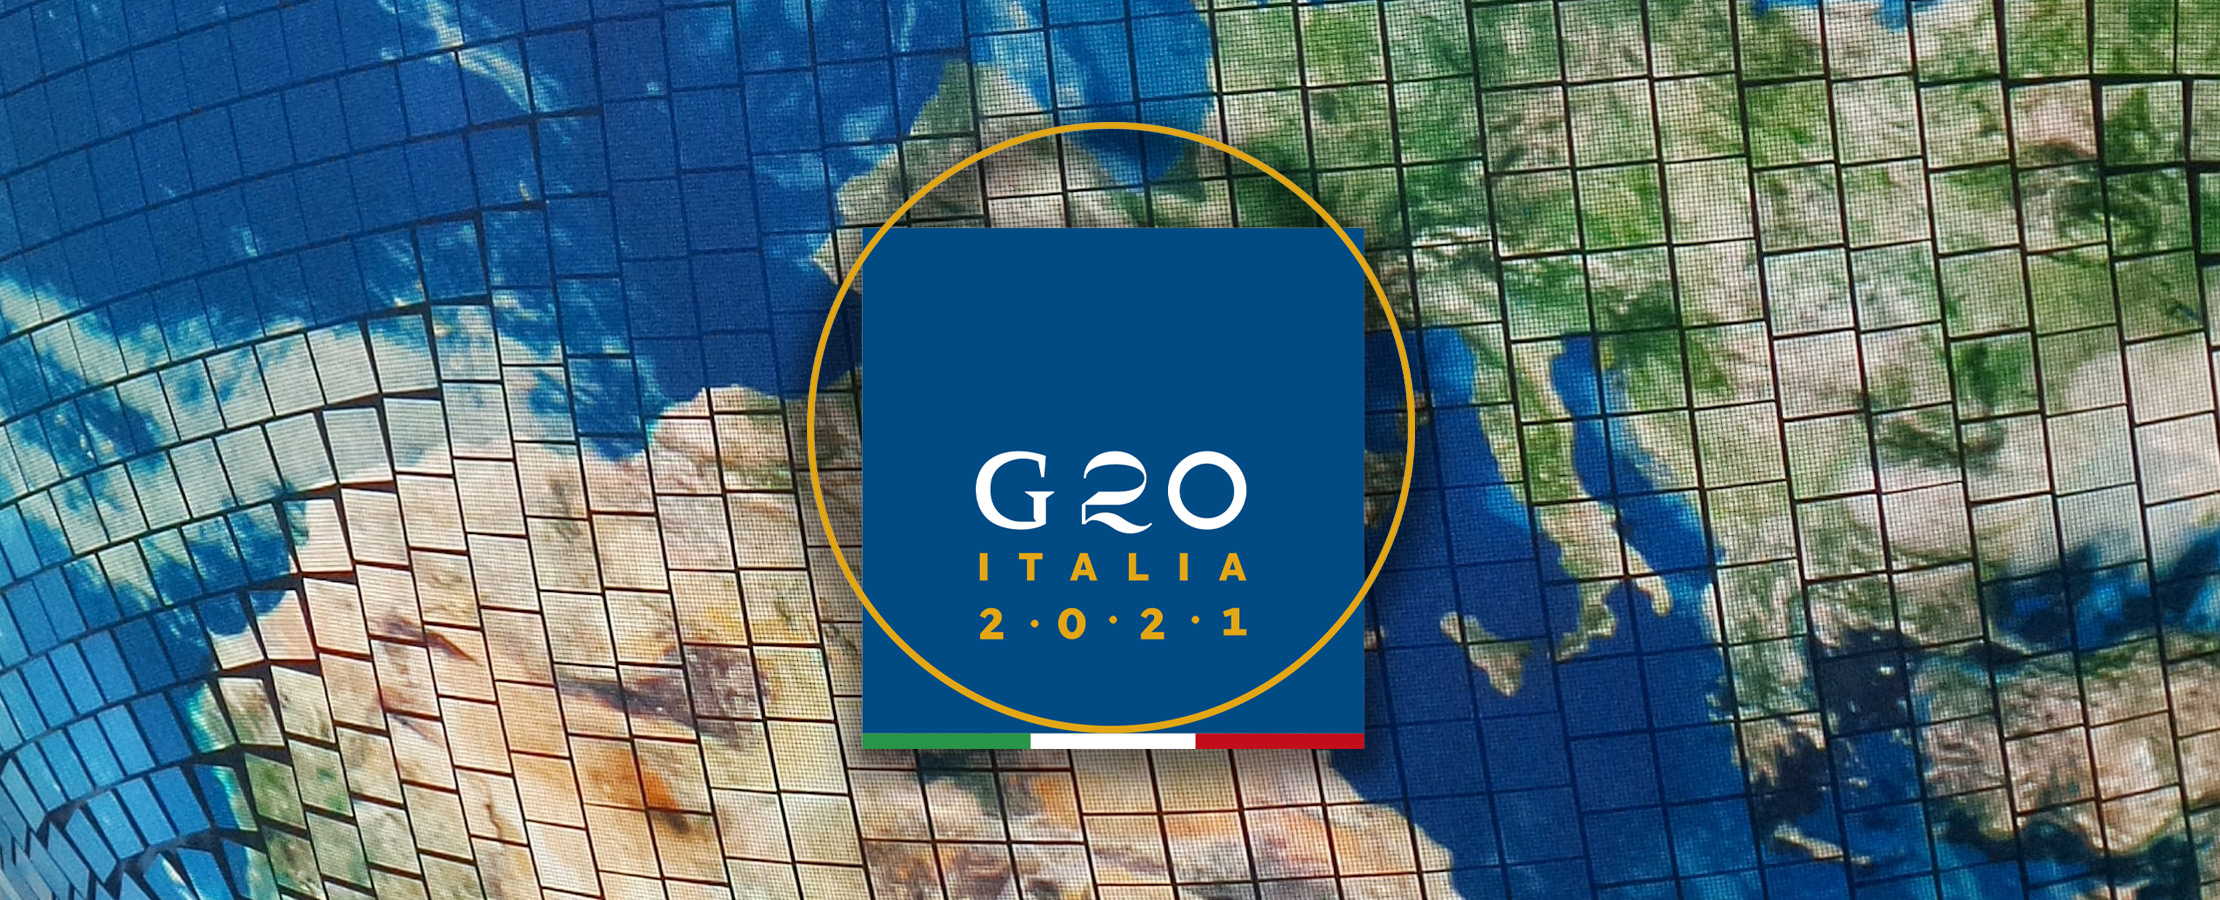 G20 Italy 1